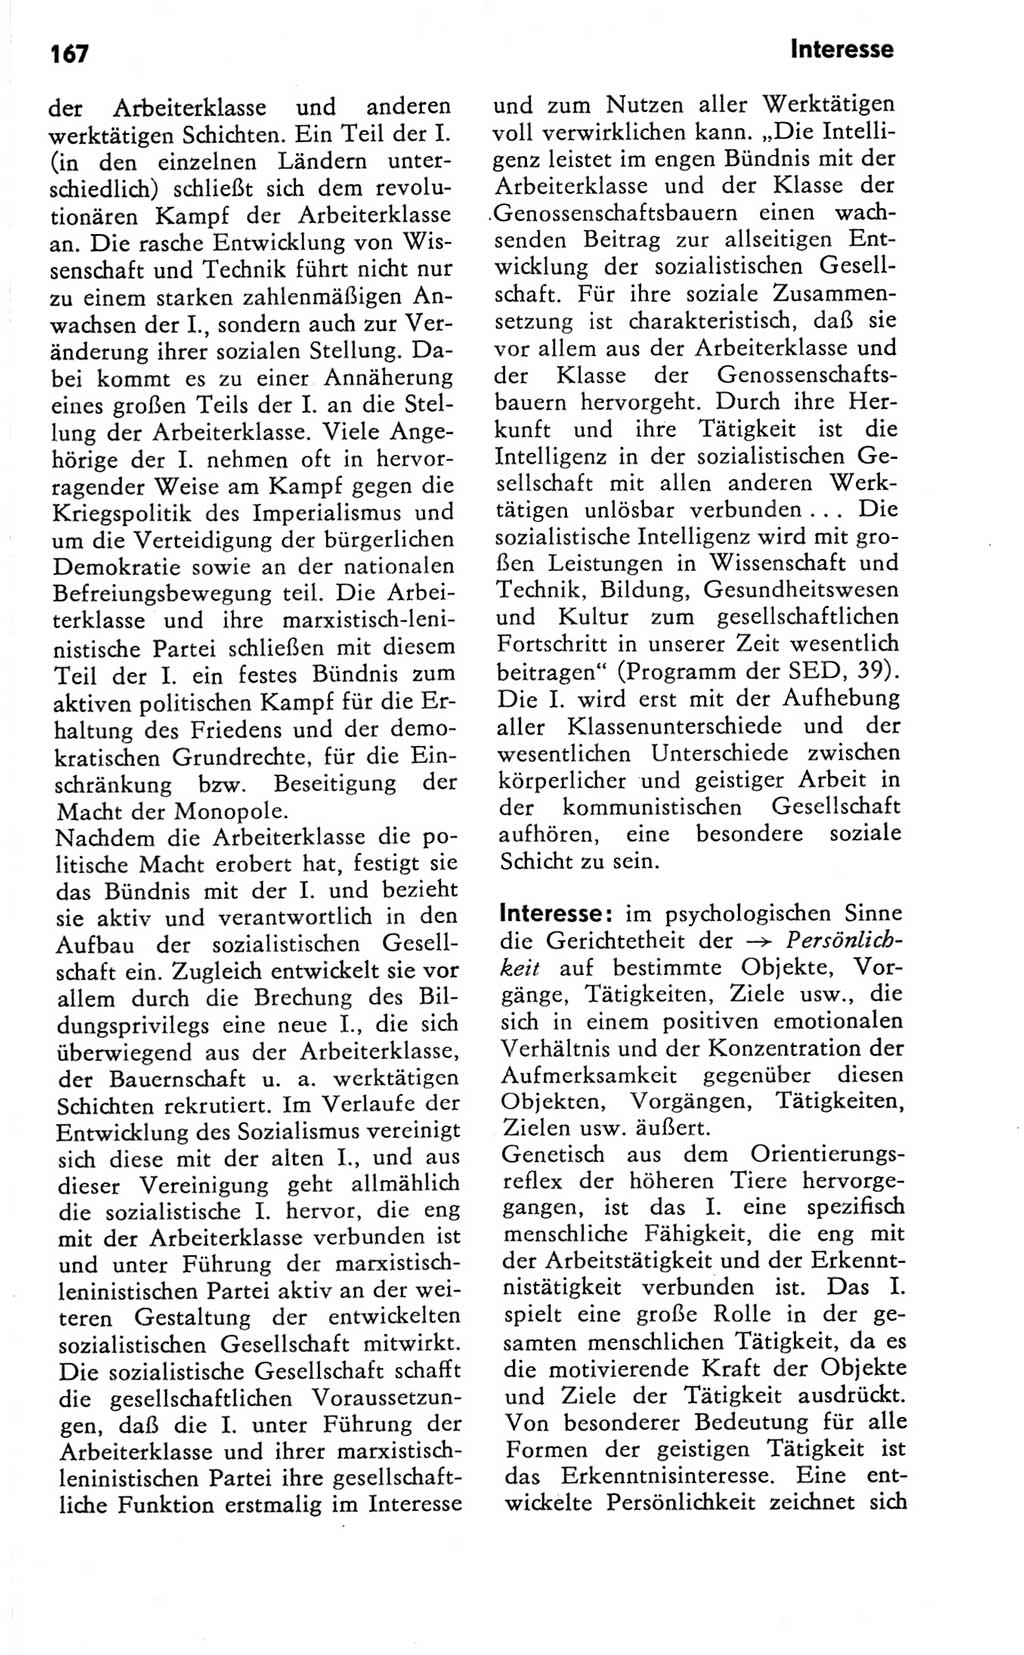 Kleines Wörterbuch der marxistisch-leninistischen Philosophie [Deutsche Demokratische Republik (DDR)] 1981, Seite 167 (Kl. Wb. ML Phil. DDR 1981, S. 167)